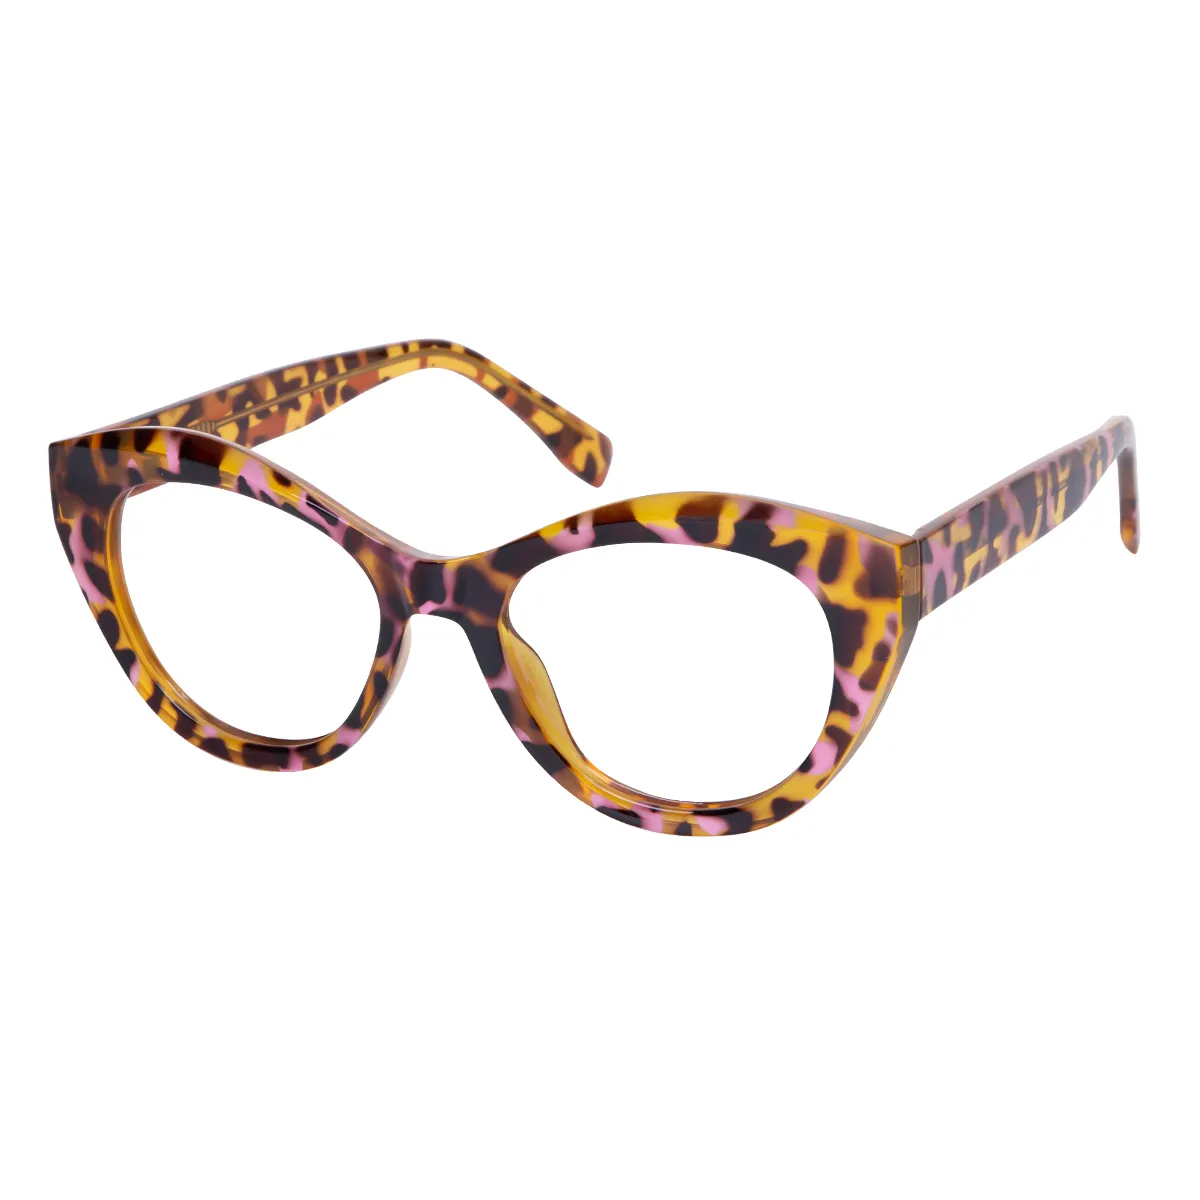 Liora - Cat-eye Tortoiseshell Glasses for Women